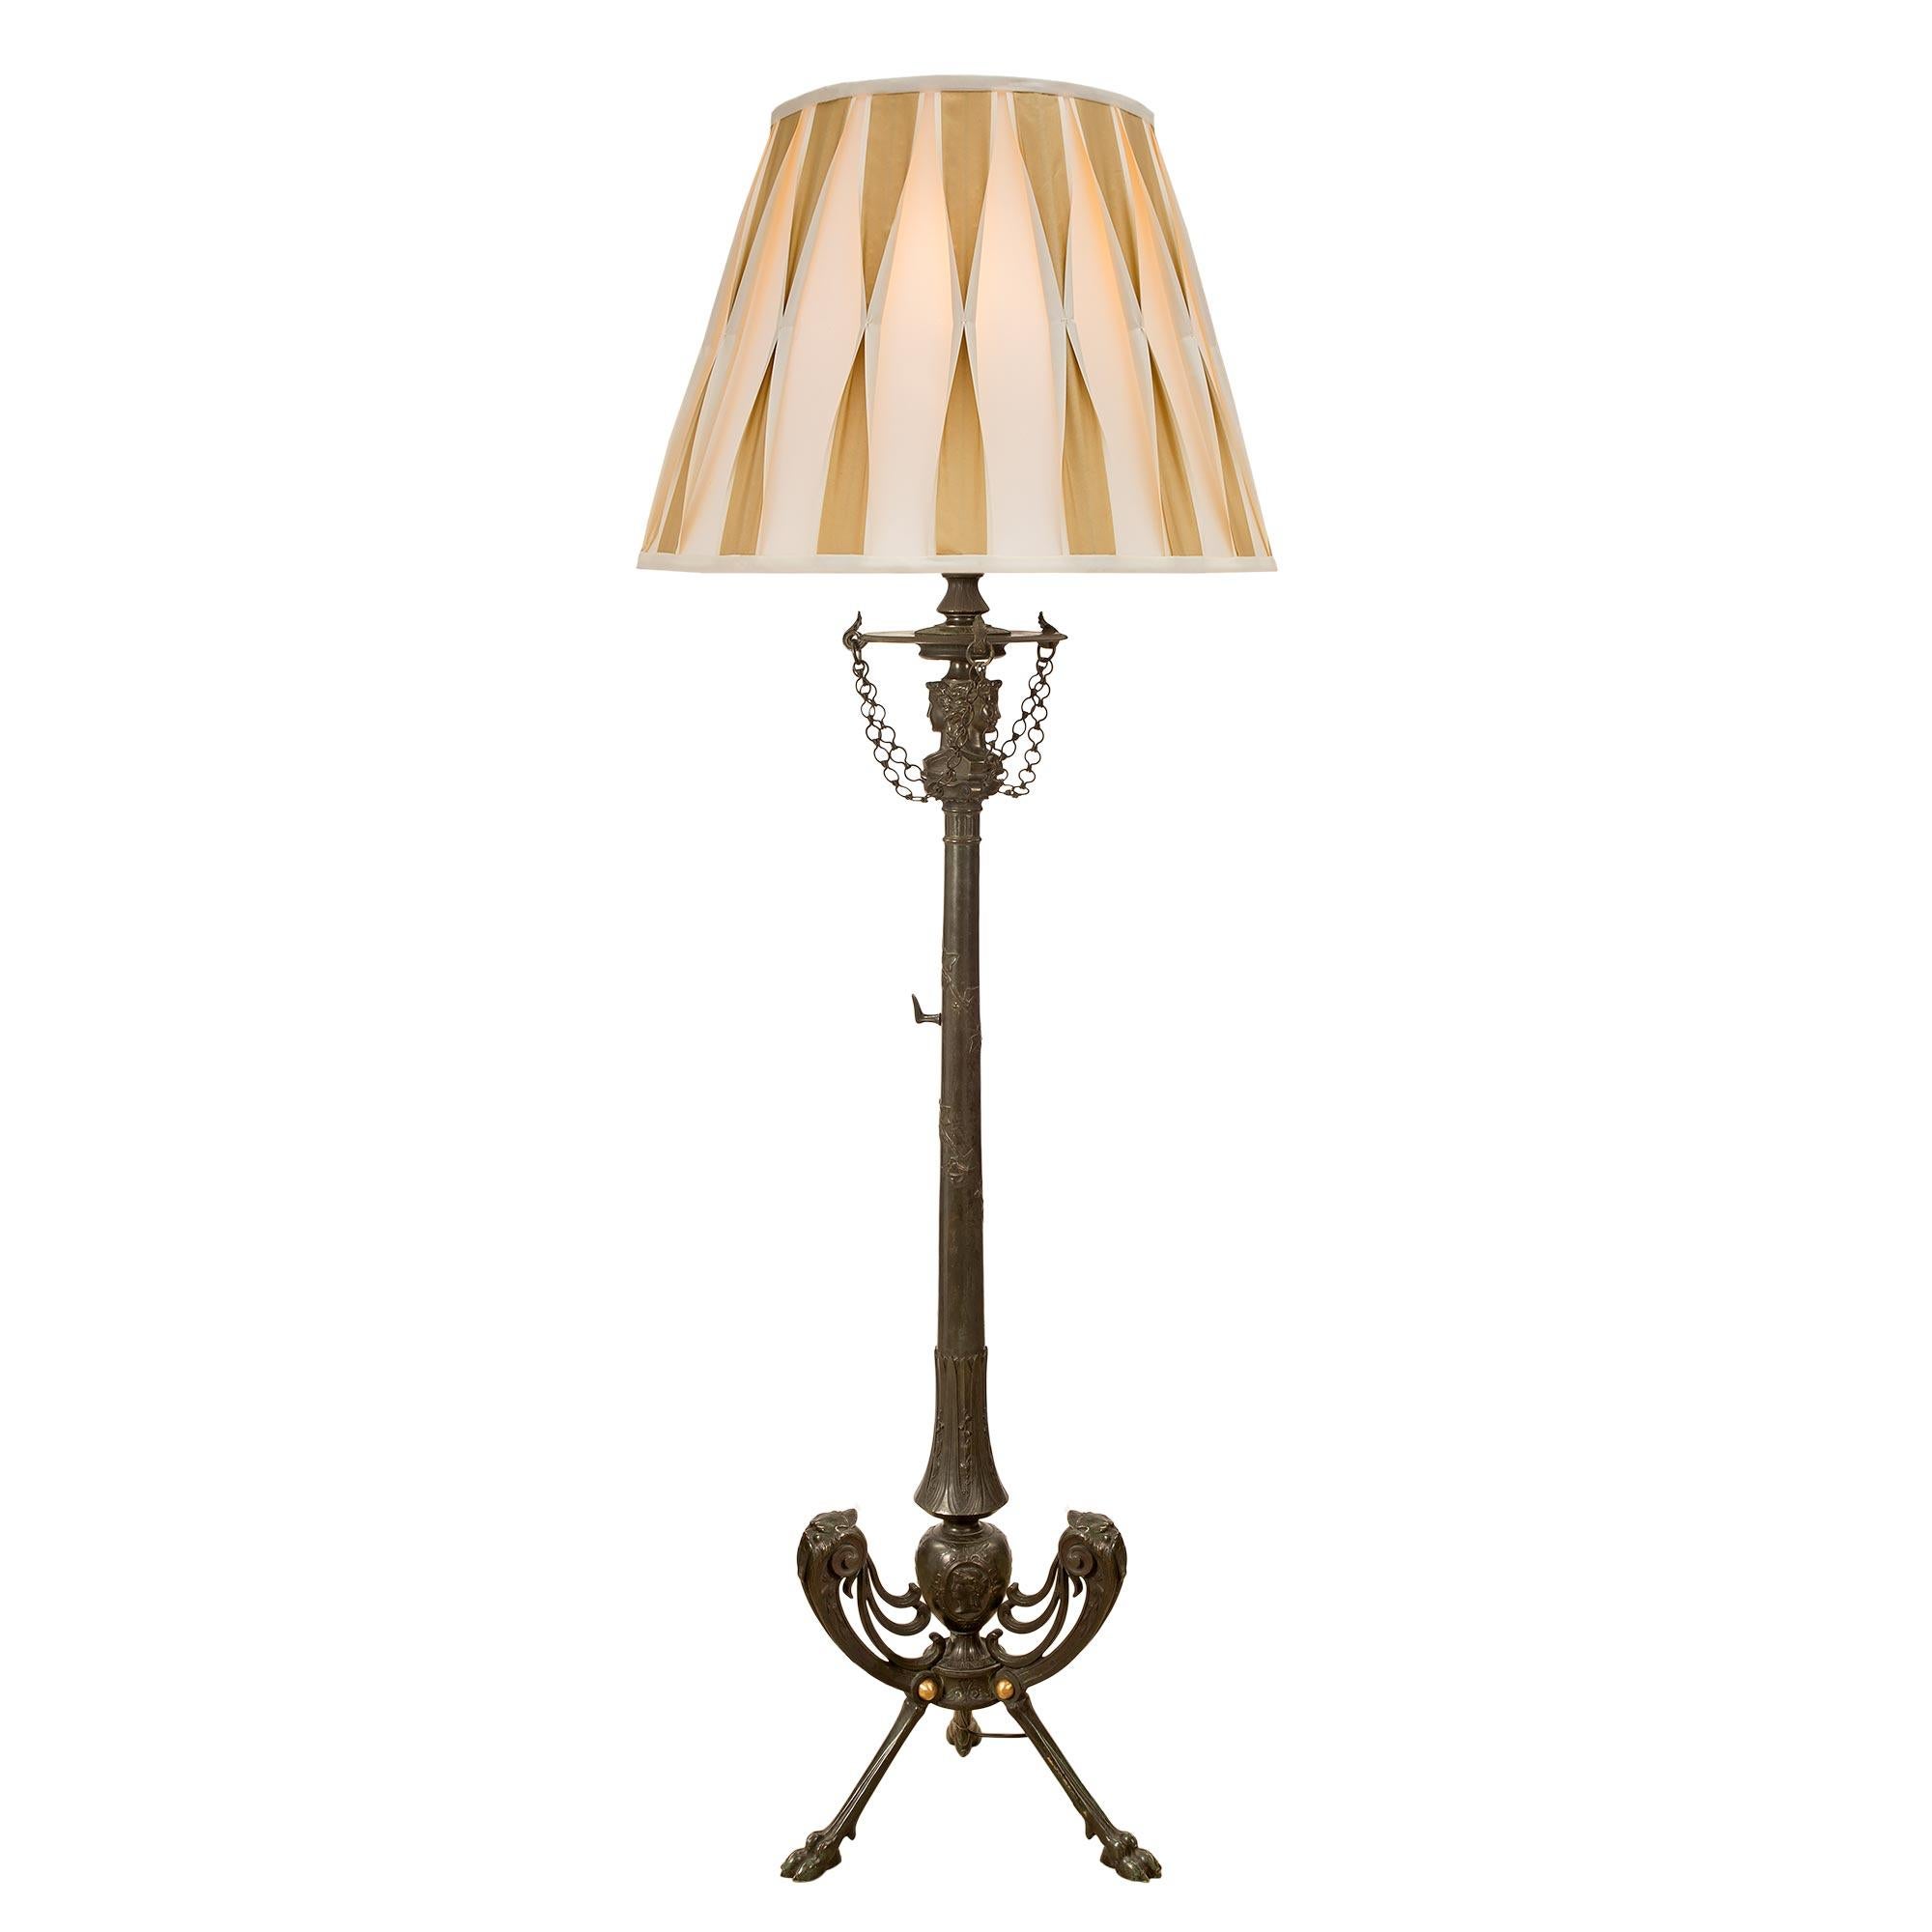 Exceptionnel lampadaire néoclassique français du XIXe siècle en bronze vert-de-gris et bronze doré. La lampe repose sur trois beaux pieds en patte d'oie richement ciselés et sur des supports à volutes percées avec de fines têtes de lion et des